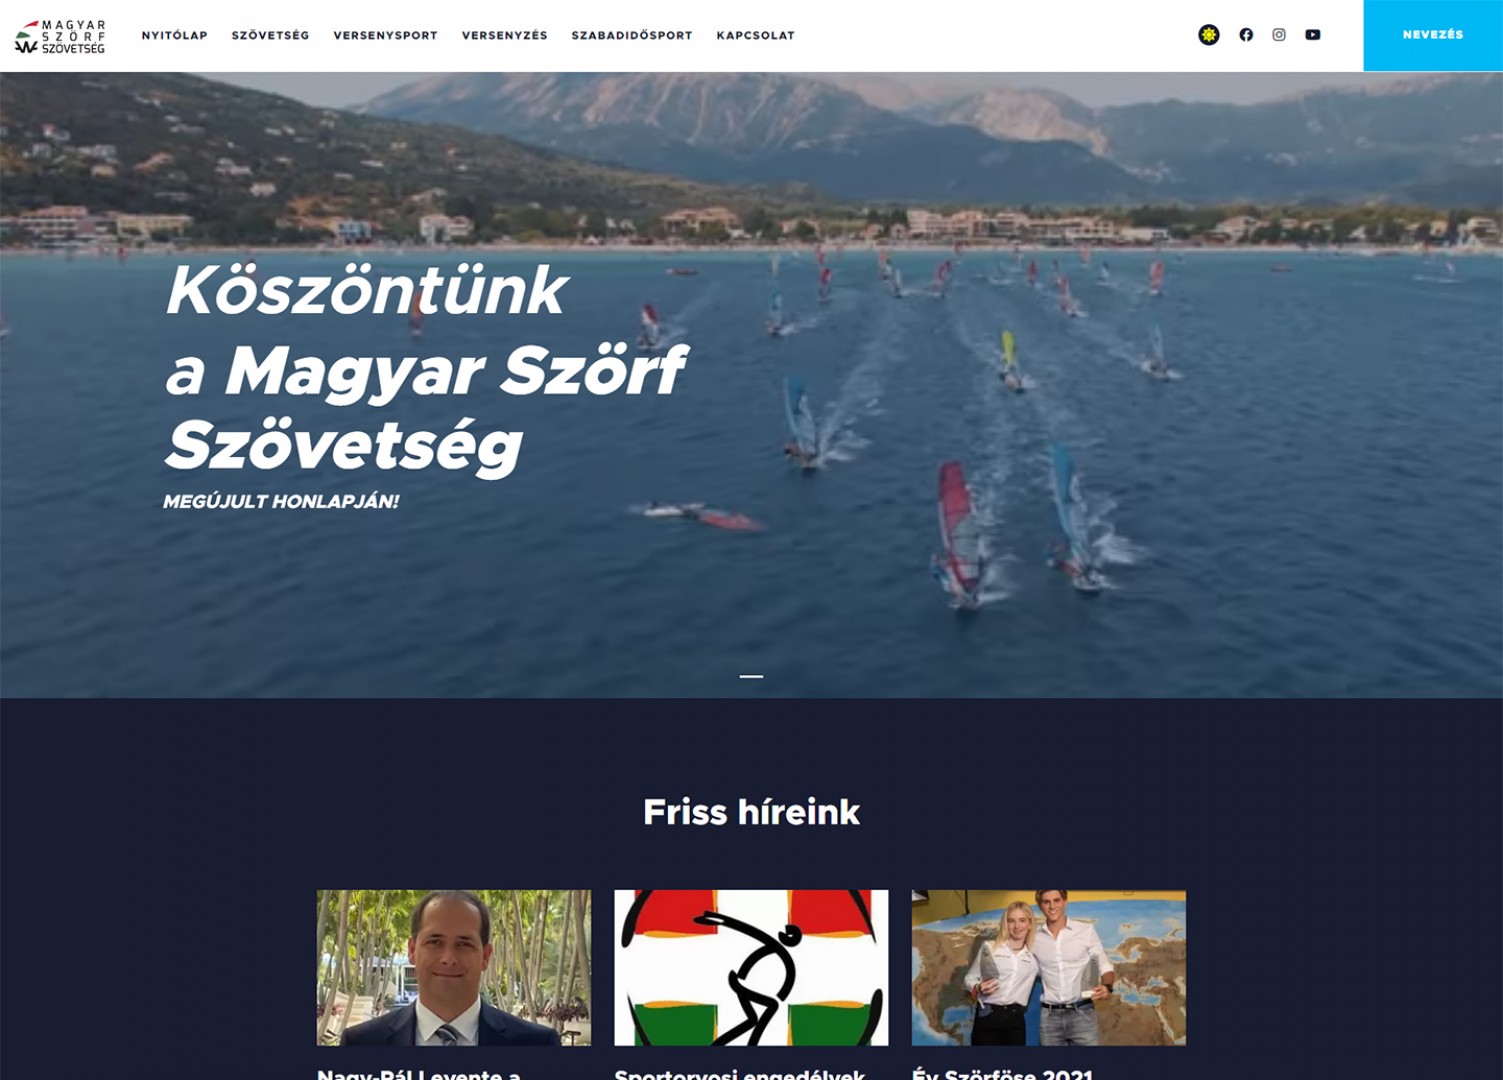 Magyar Szörf Szövetség